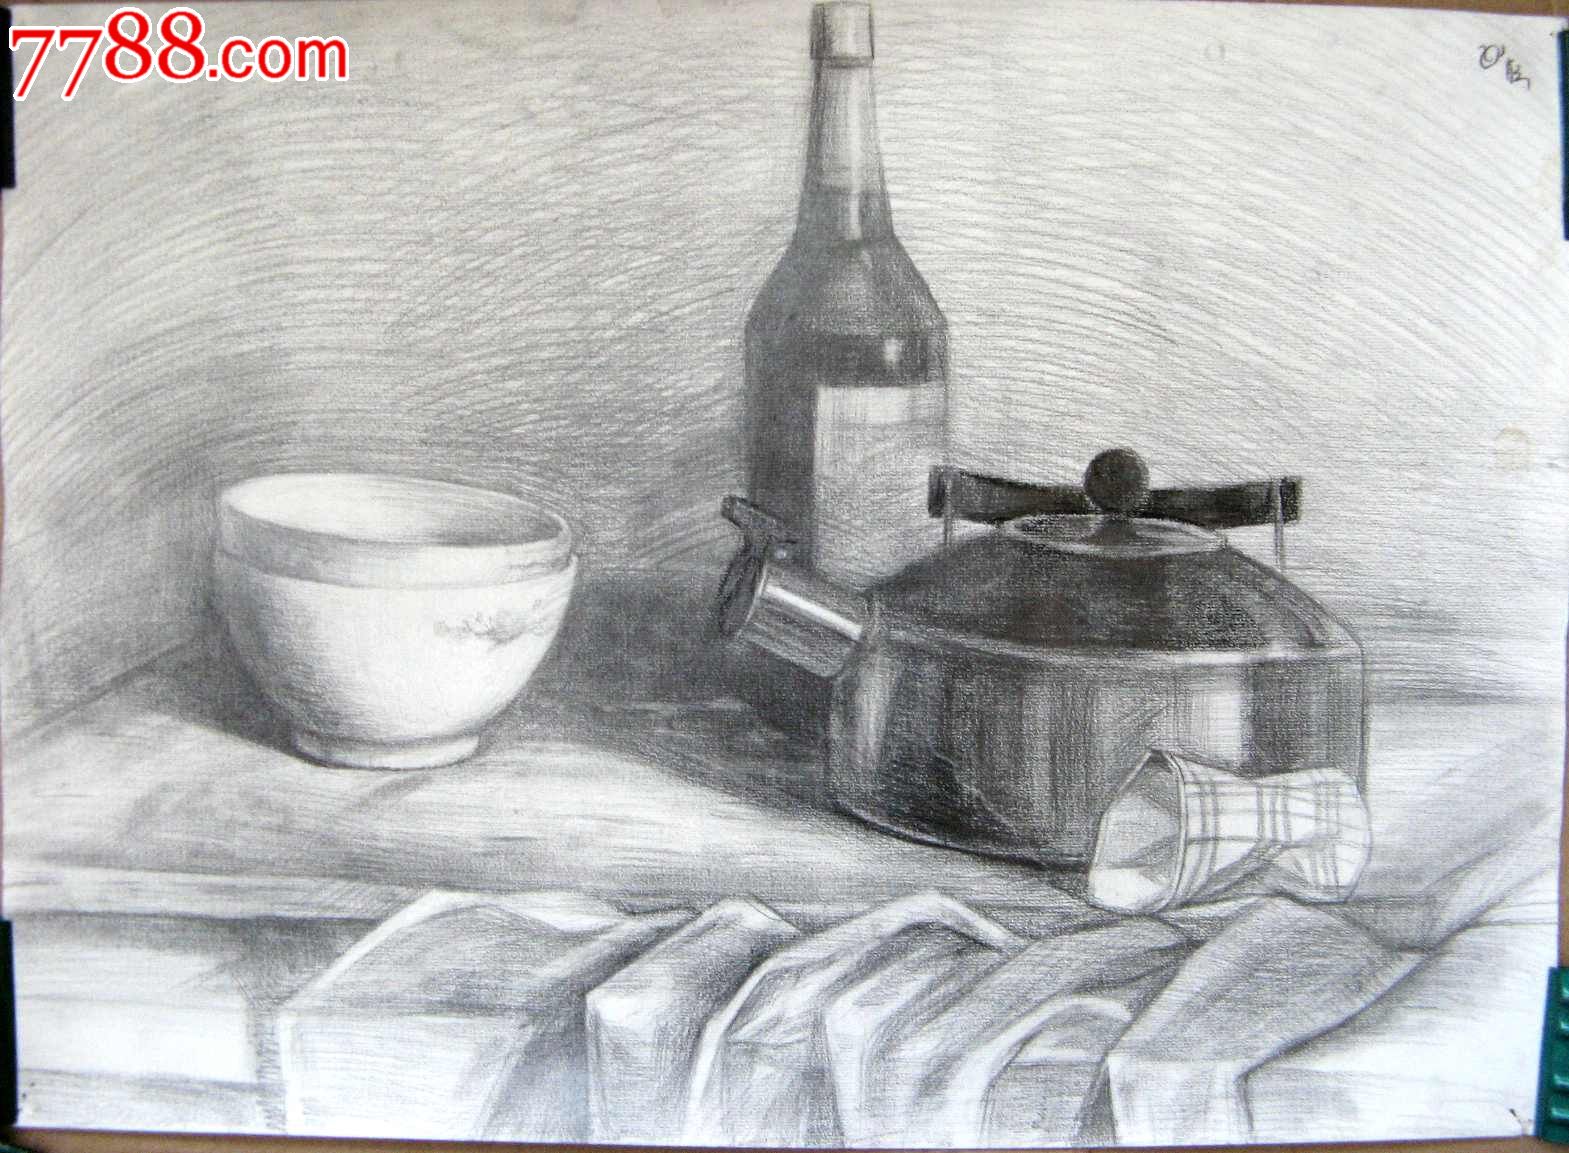 铅笔素描静物图:容器、酒瓶,素描\/速写,铅笔画原